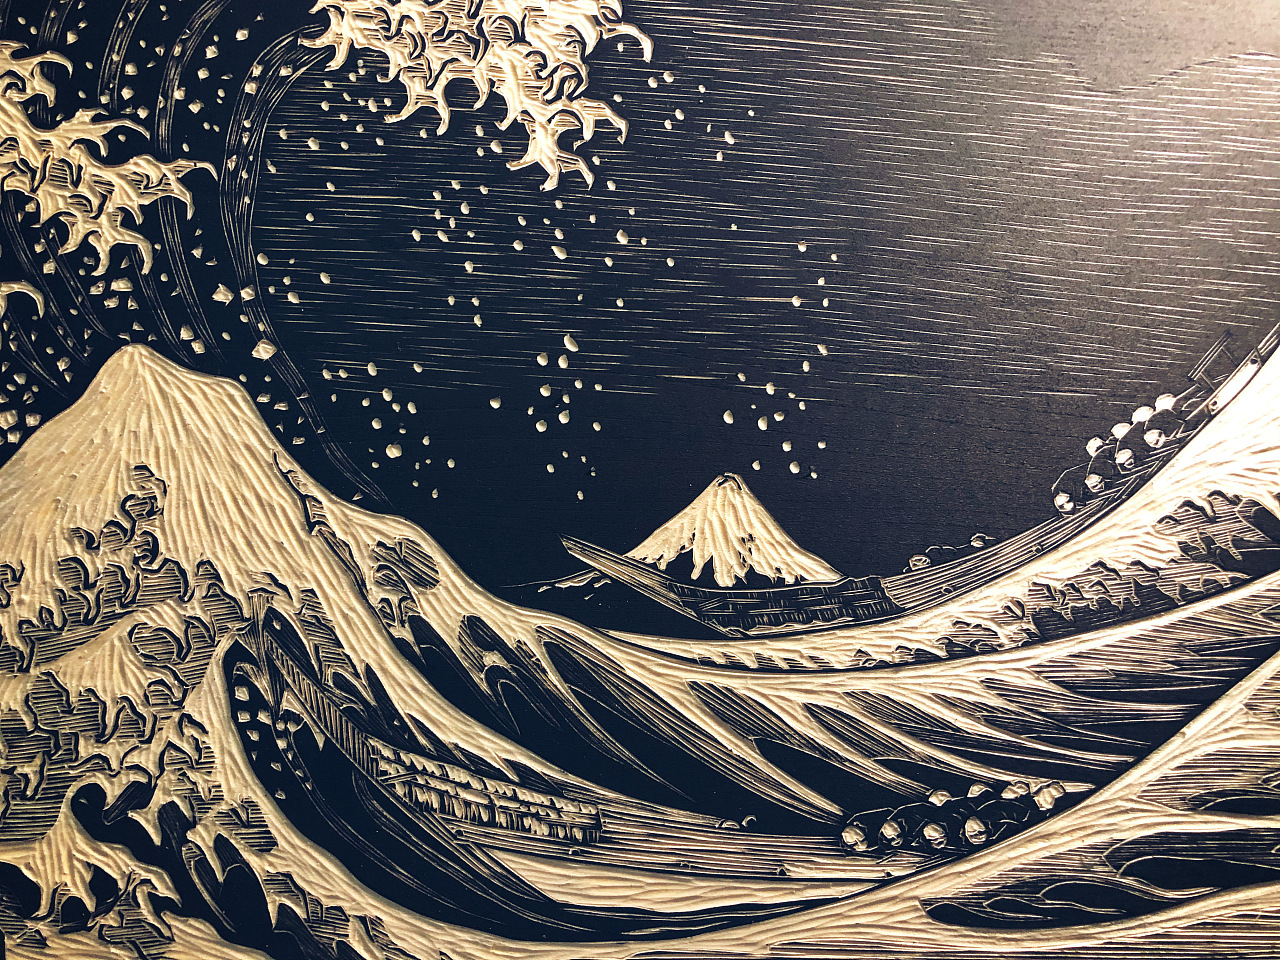 手工雕刻定制黑白木刻版画《神奈川冲浪里》